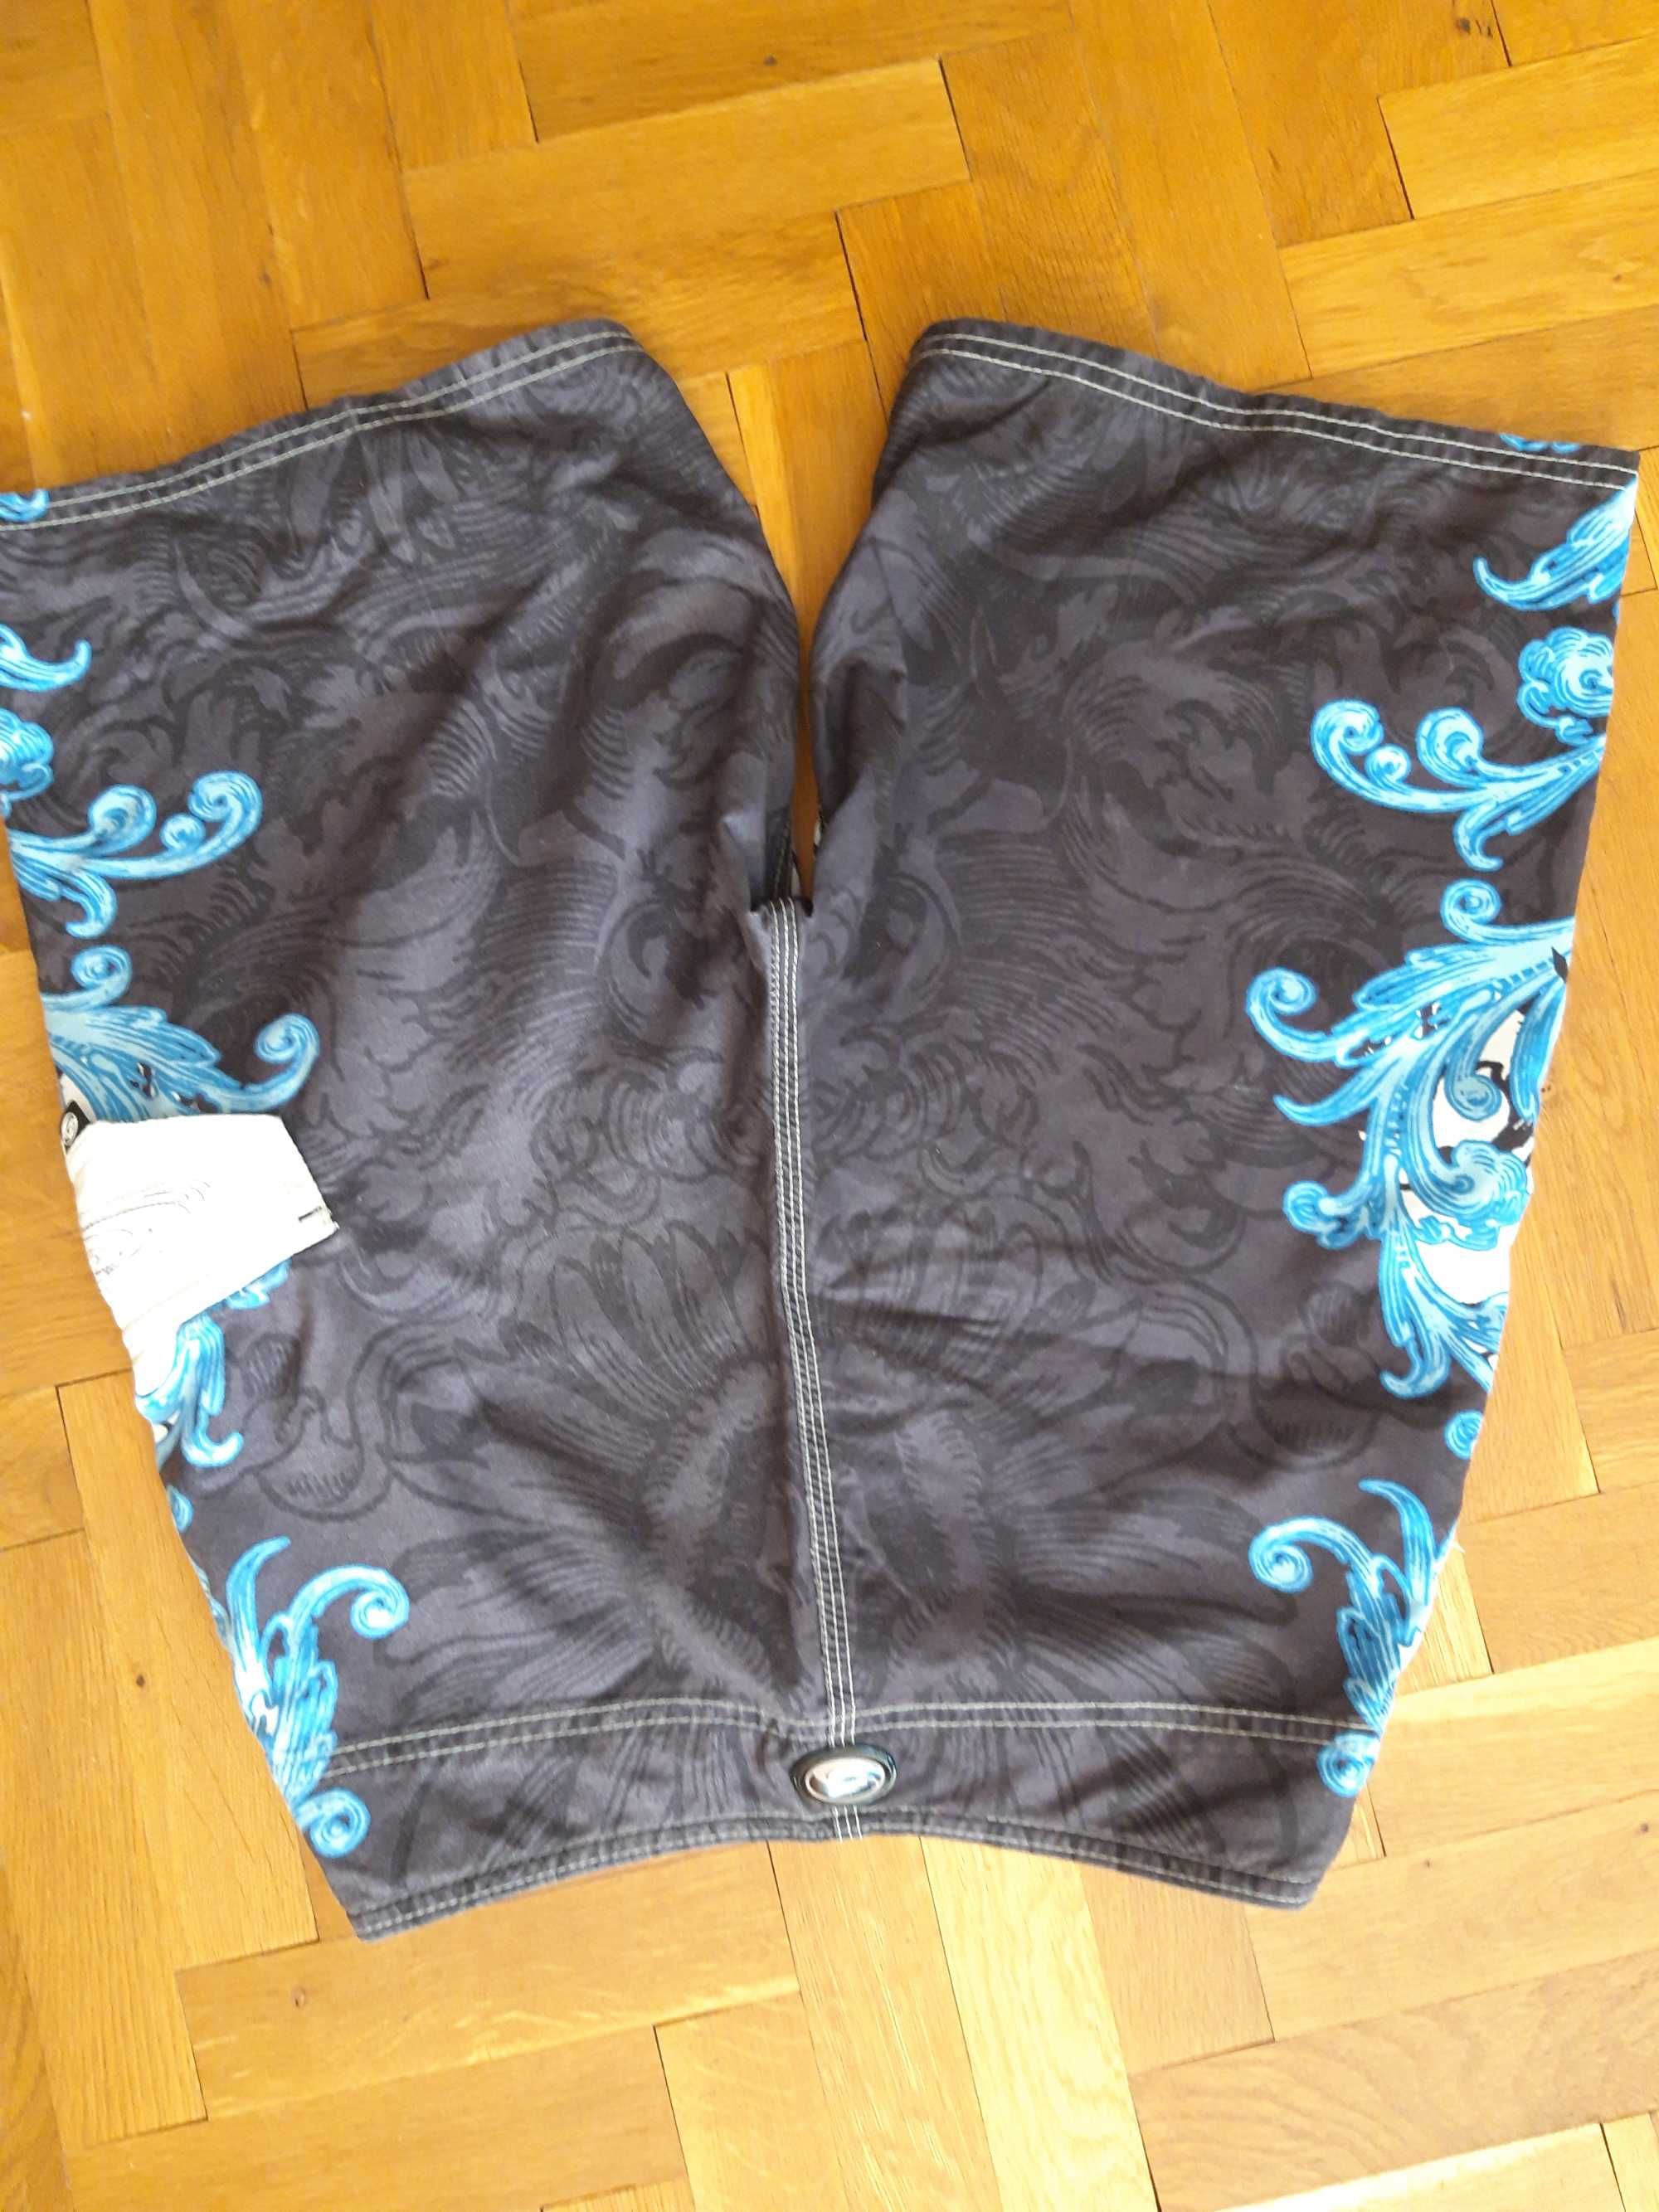 Къси панталони марка Kirra /тип шорти - подходящи за плаж.